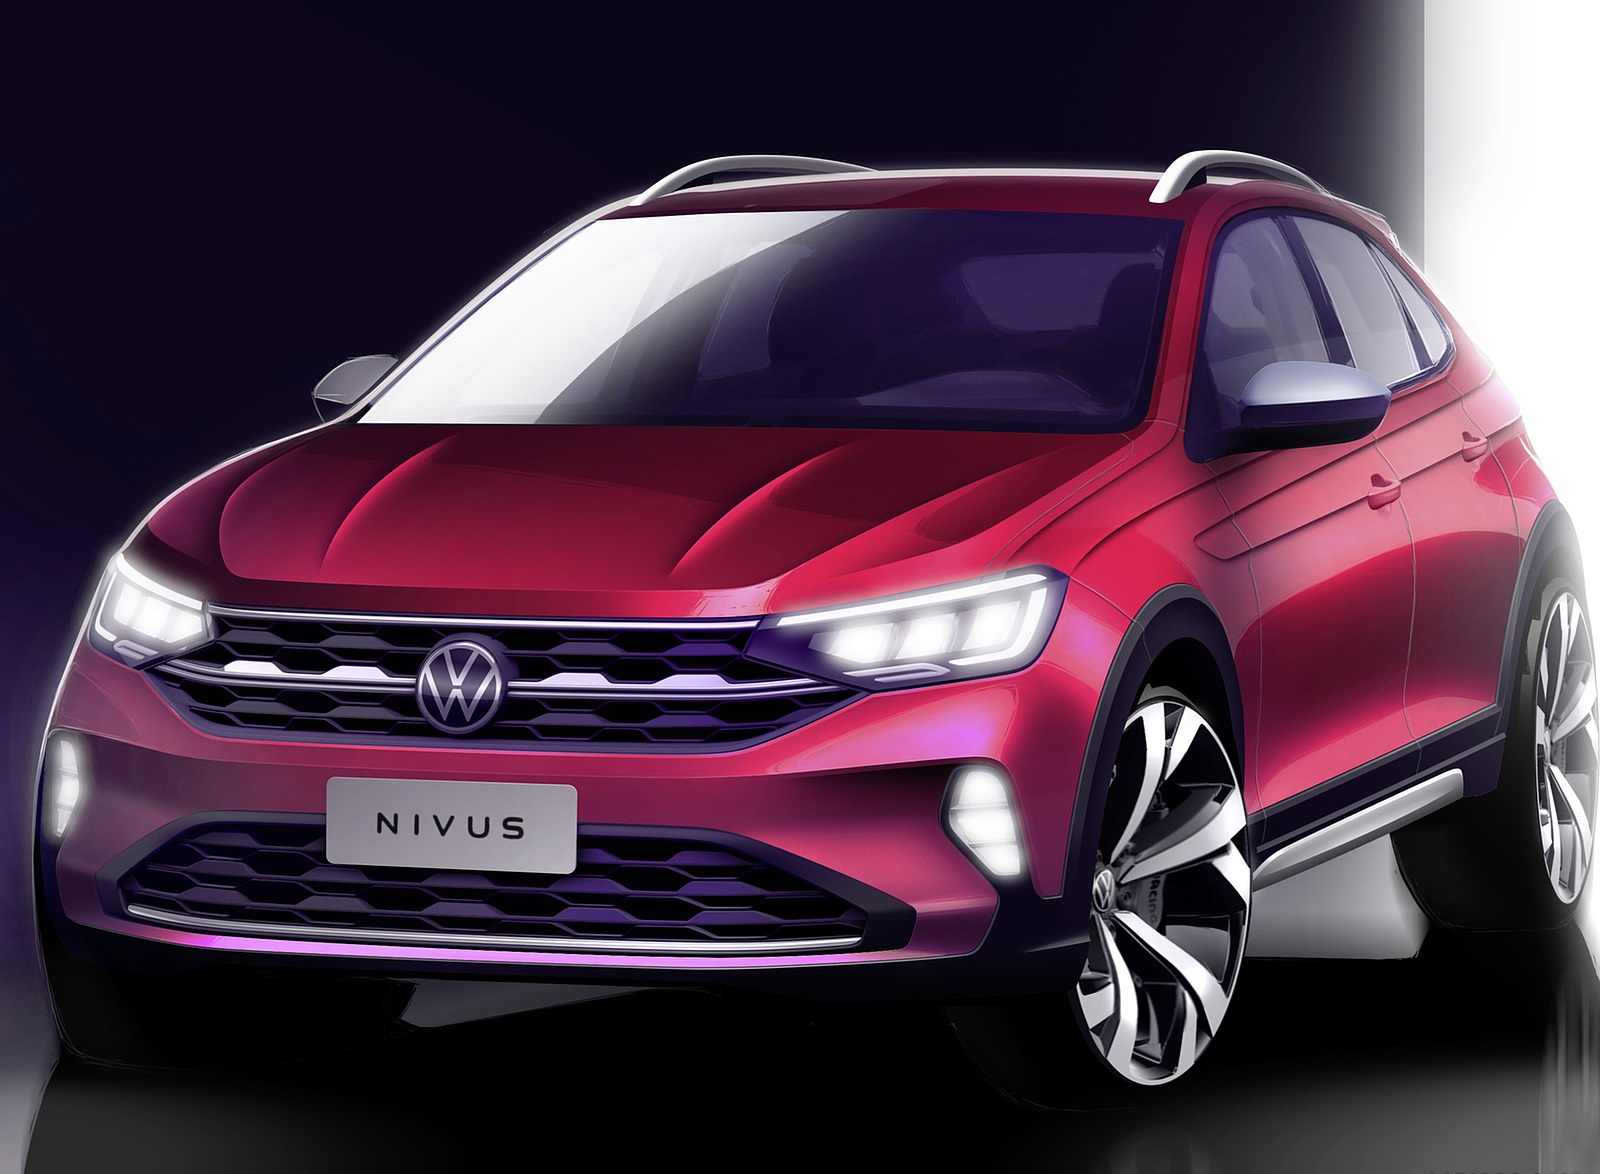 2021 Volkswagen Nivus Design Sketch Wallpapers #24 of 24